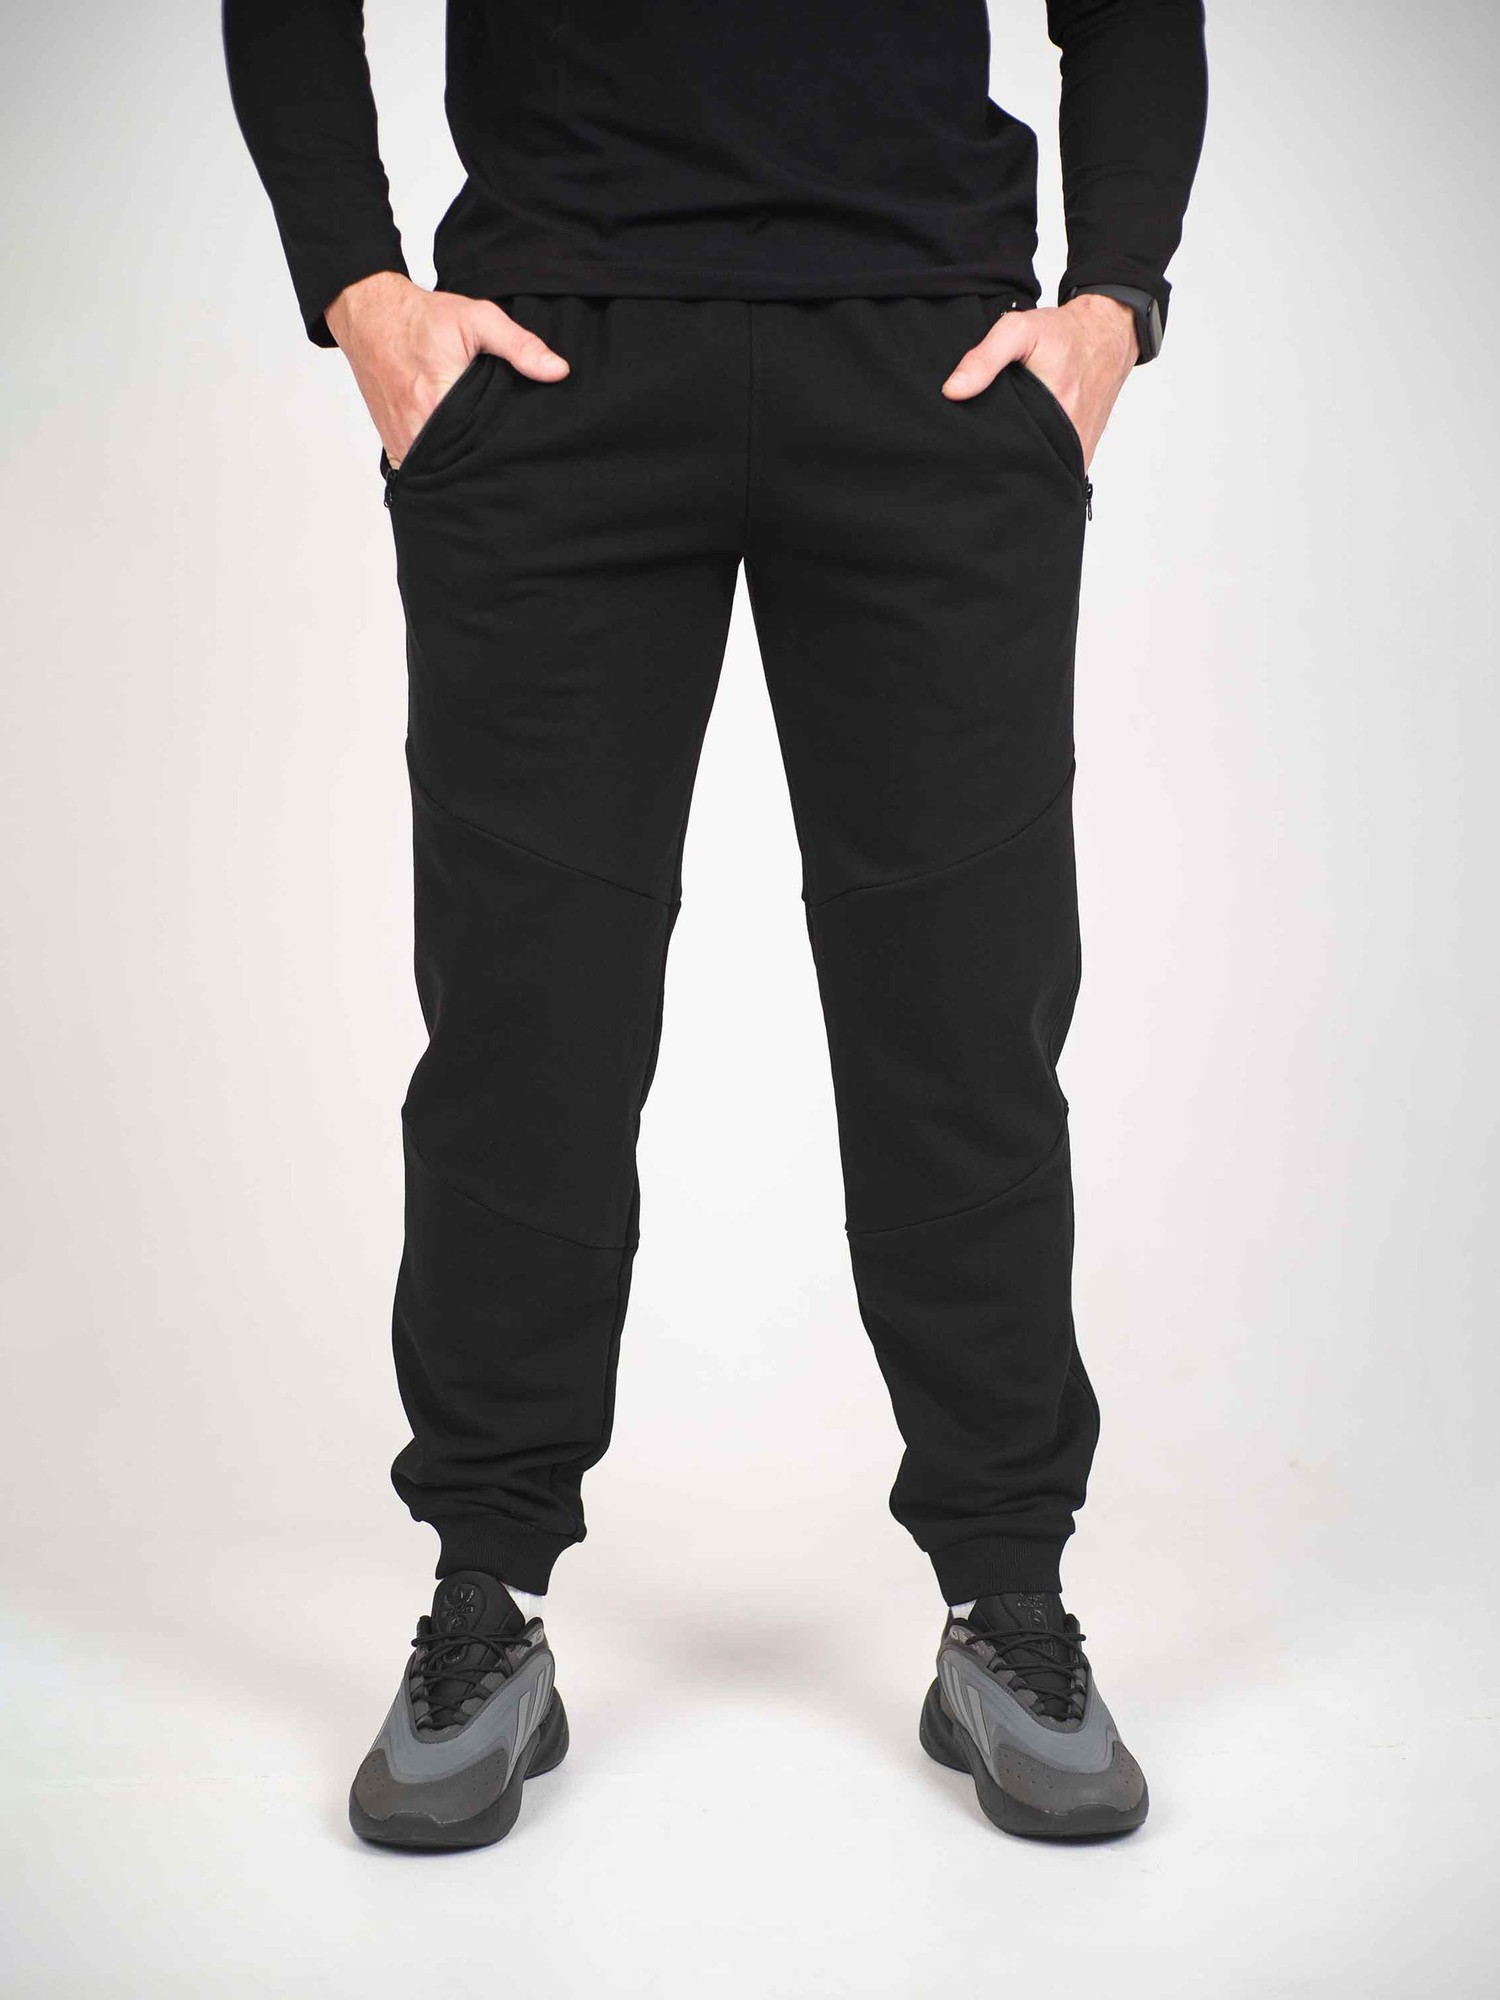 Oversized sports pants black Custom Wear